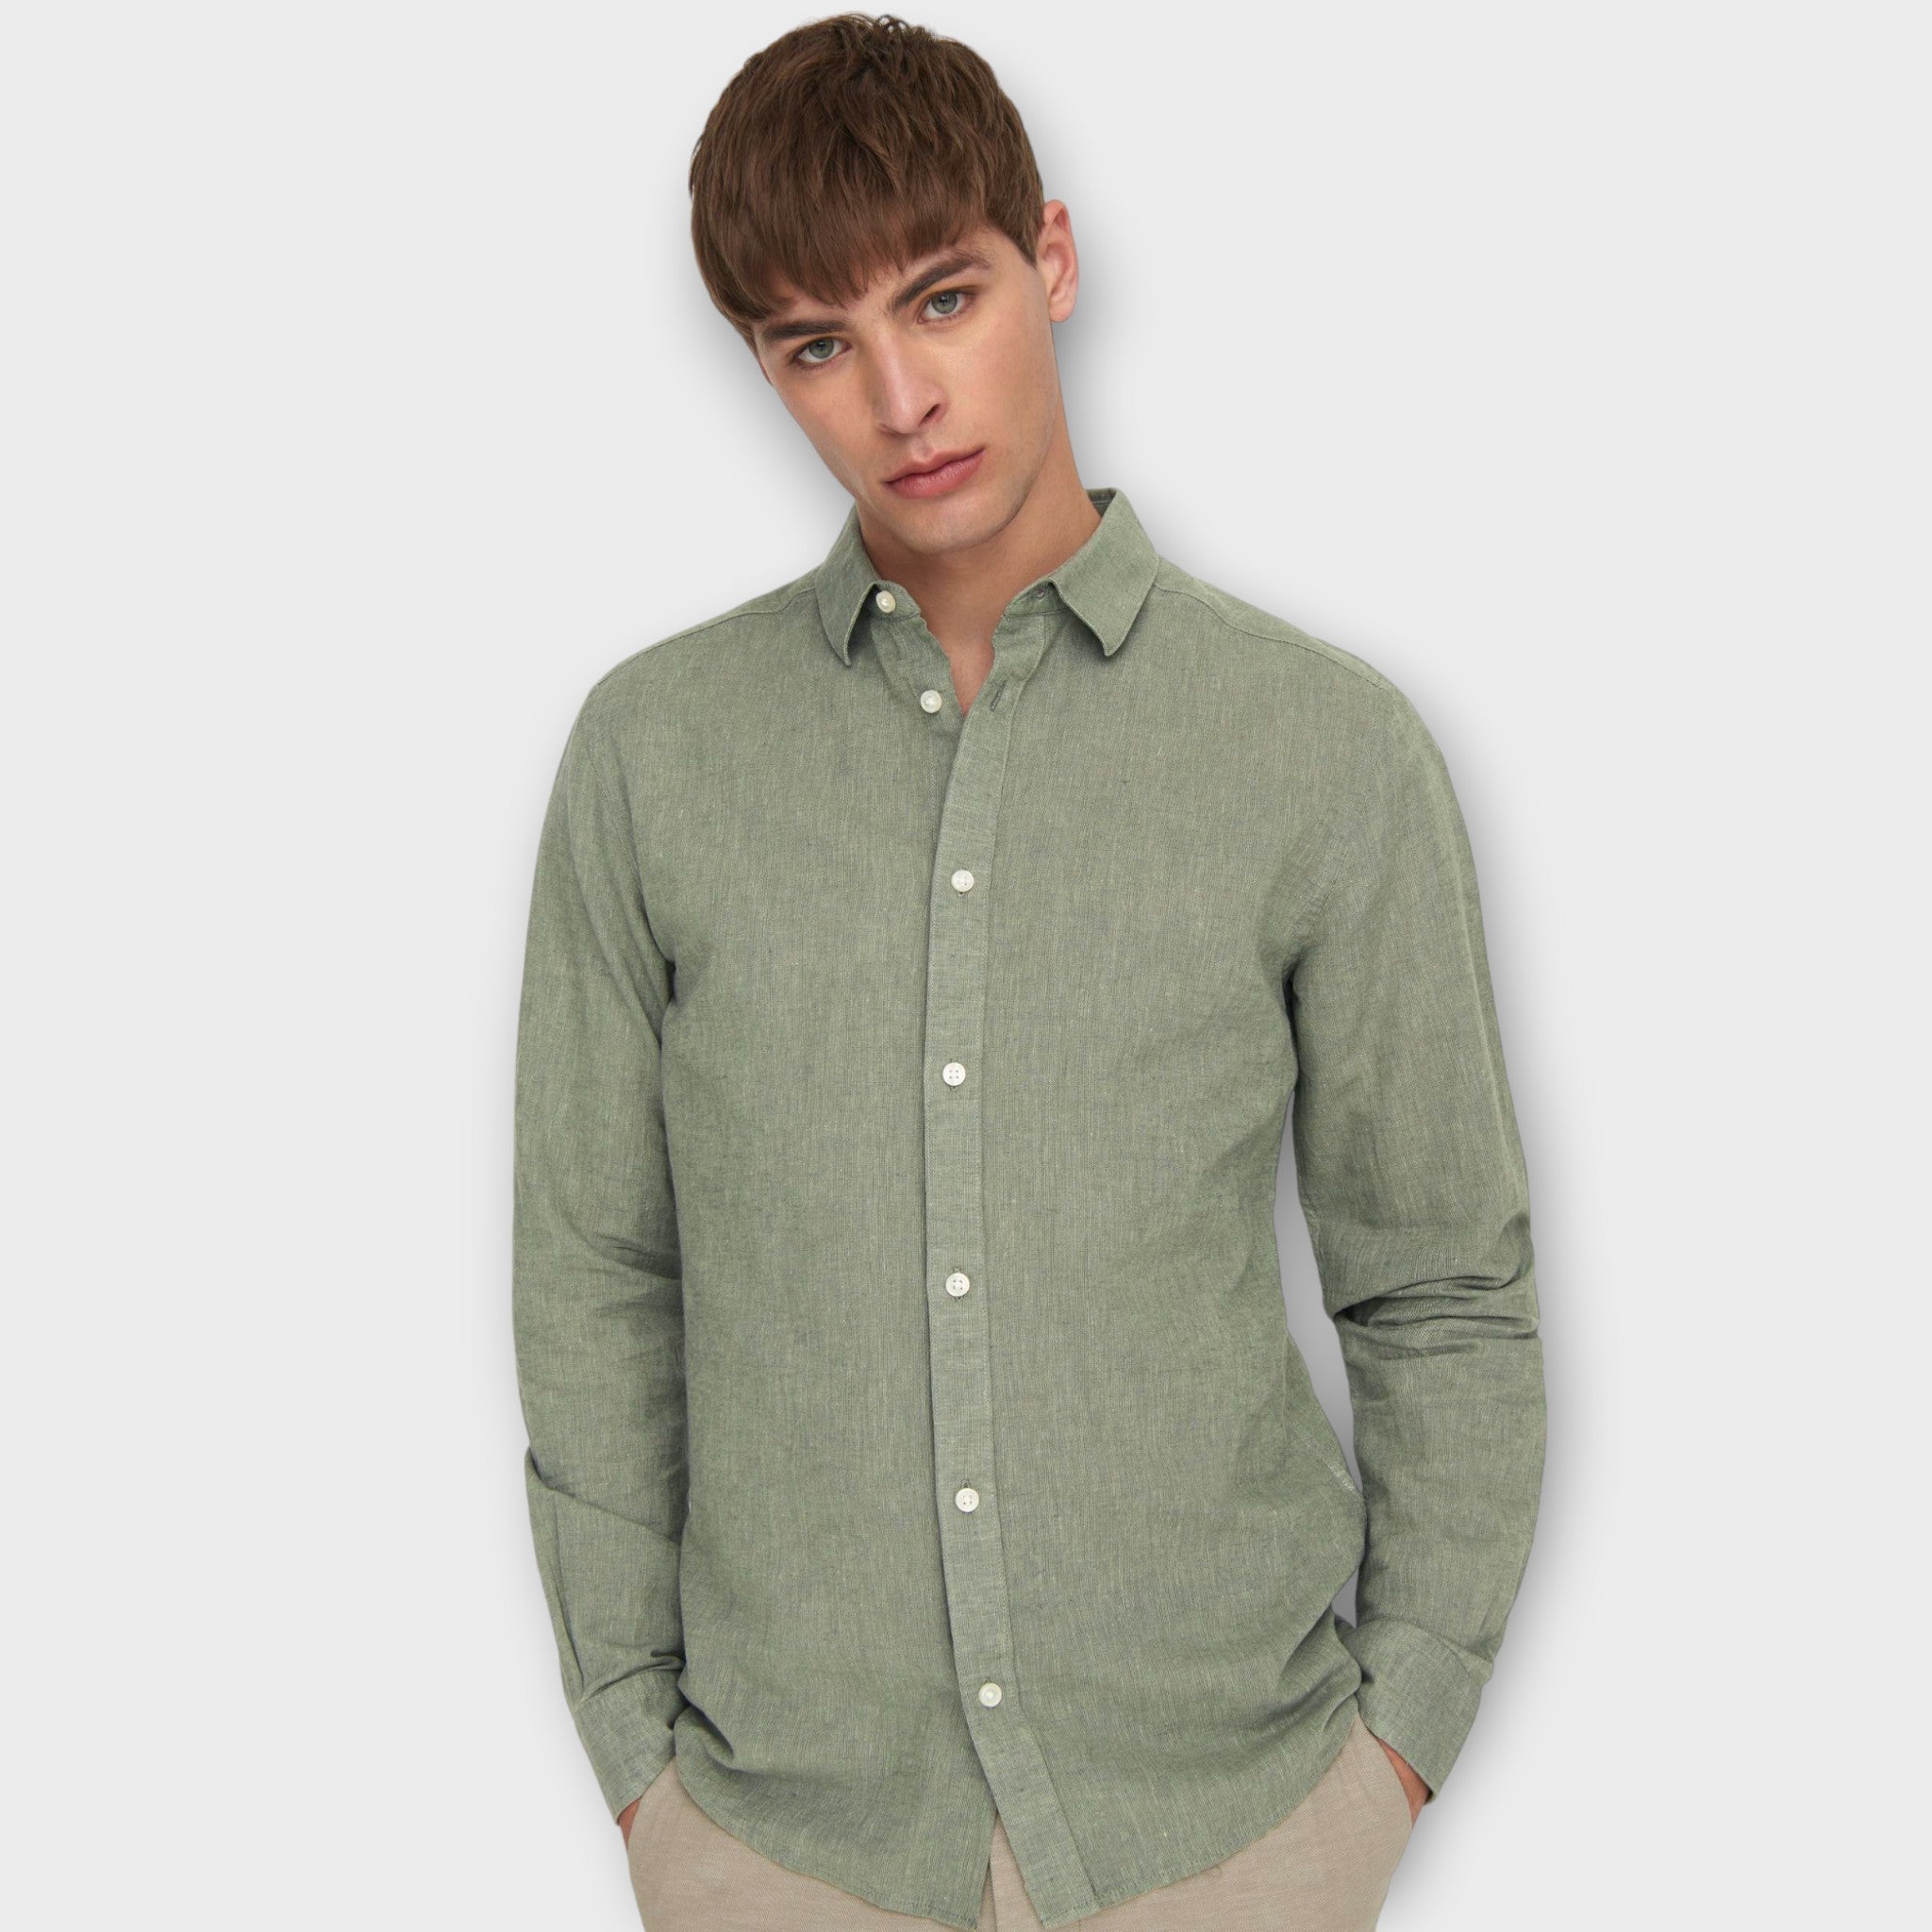 Only and Sons Caiden  LS Solid Linen Shirt  Swamp, langærmet grøn hørskjorte til mænd. Her set på mandelig model i closeup forfra.